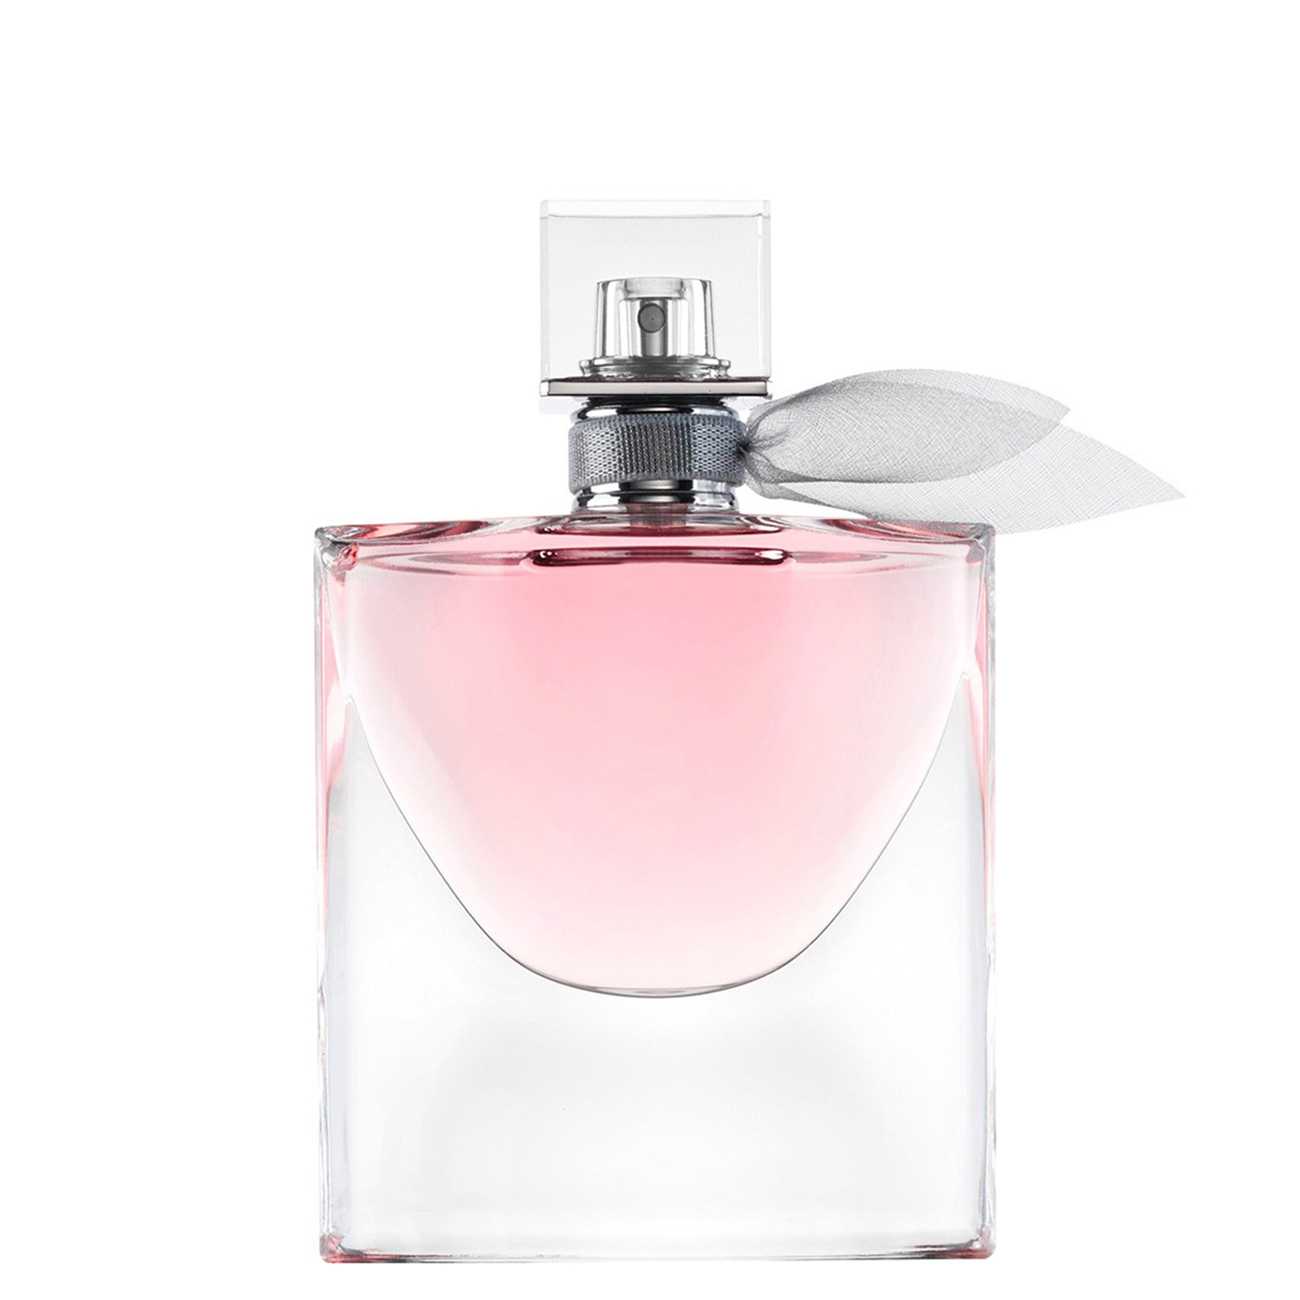 Apa de Parfum Lancôme LA VIE EST BELLE 100ml cu comanda online